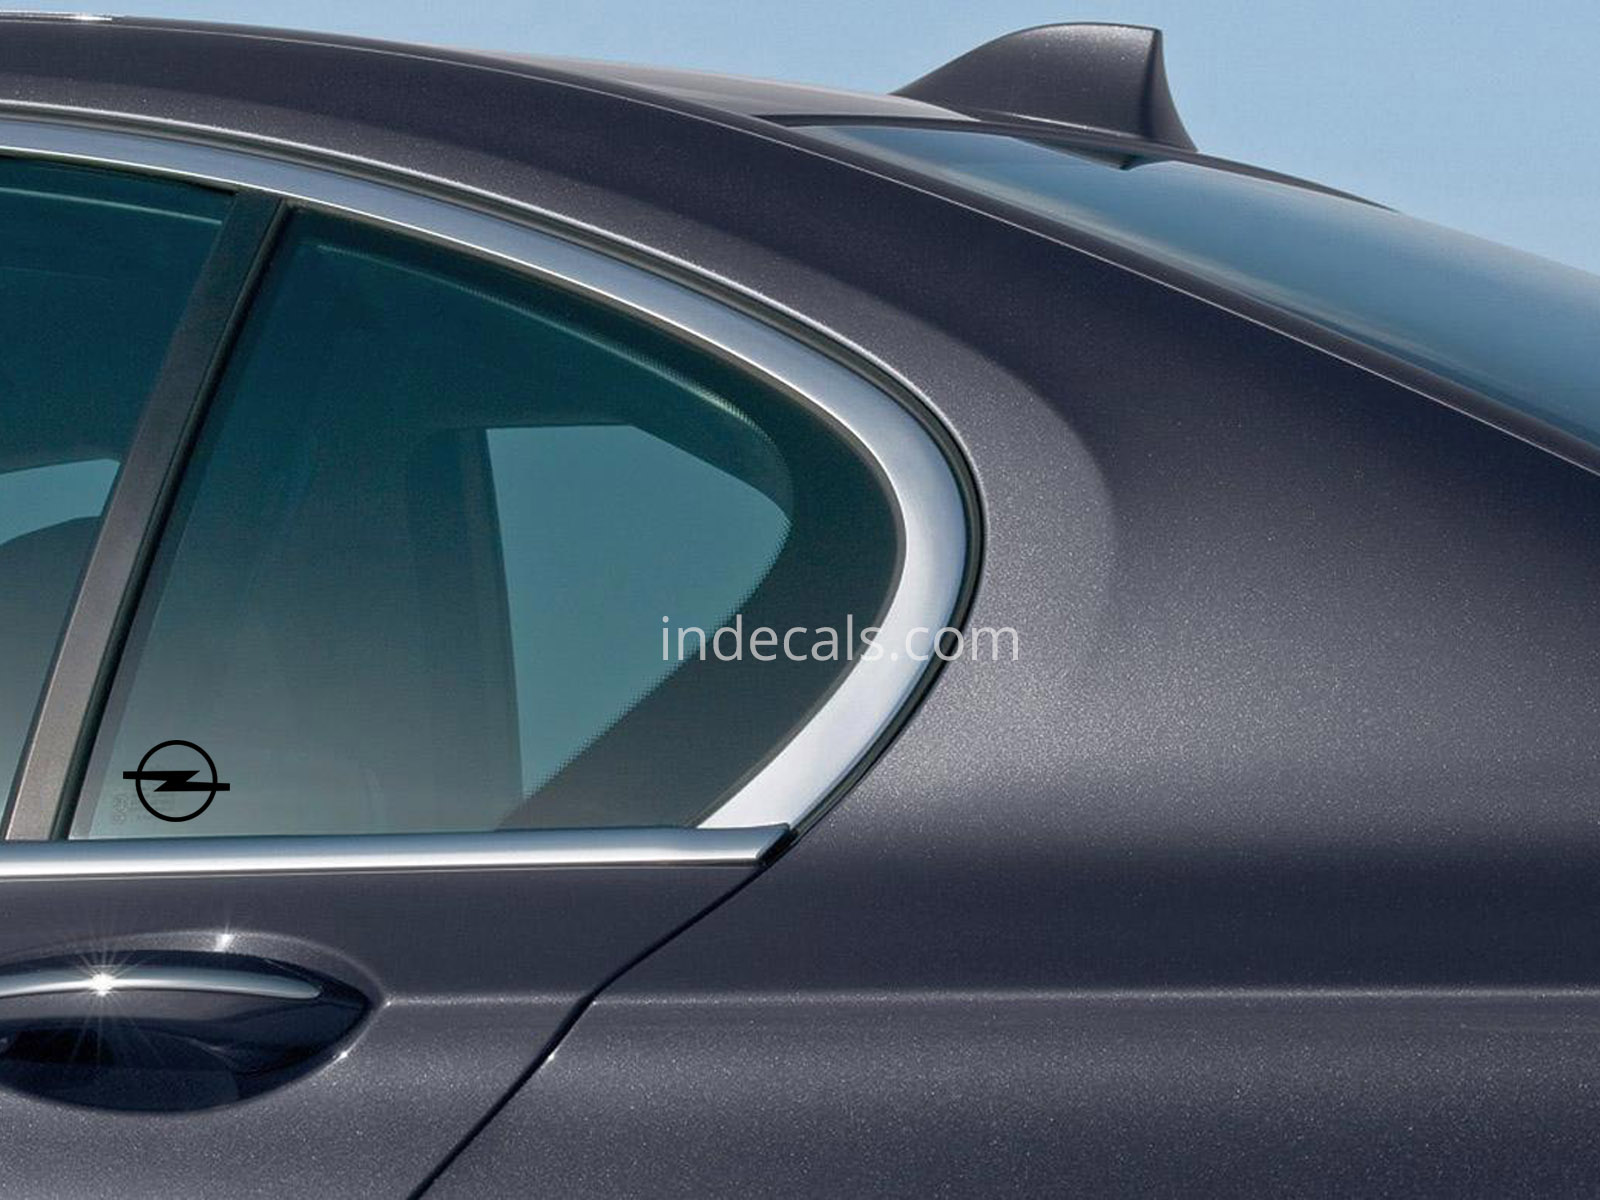 3 x Opel Stickers for Rear Window - Black